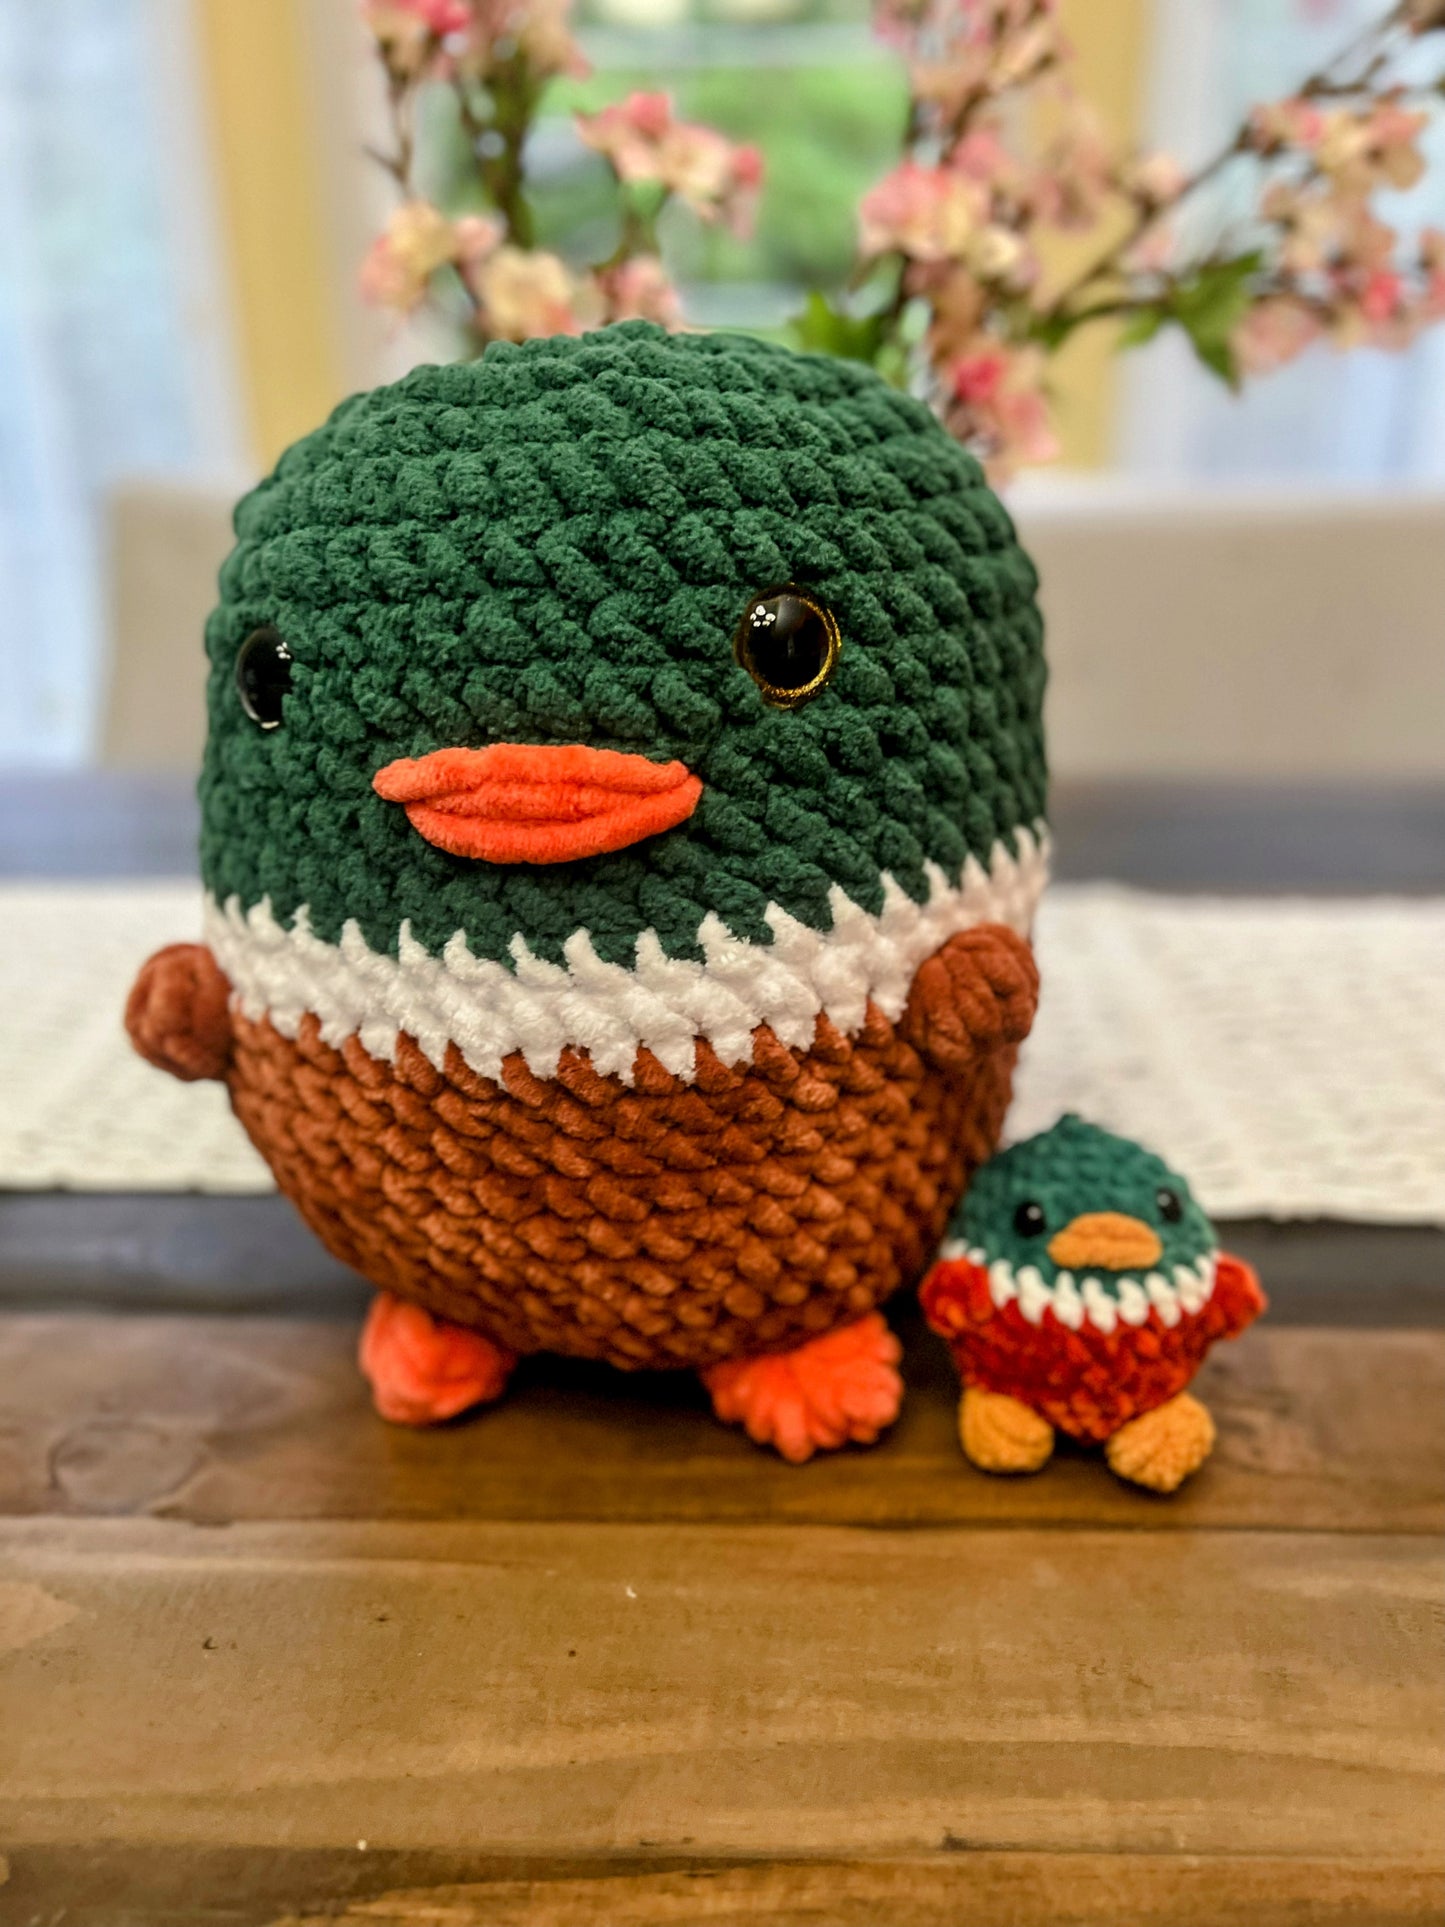 Cuddly Jumbo Mallard Duck 🦆 - Crochet Knitted Amigurumi Toy